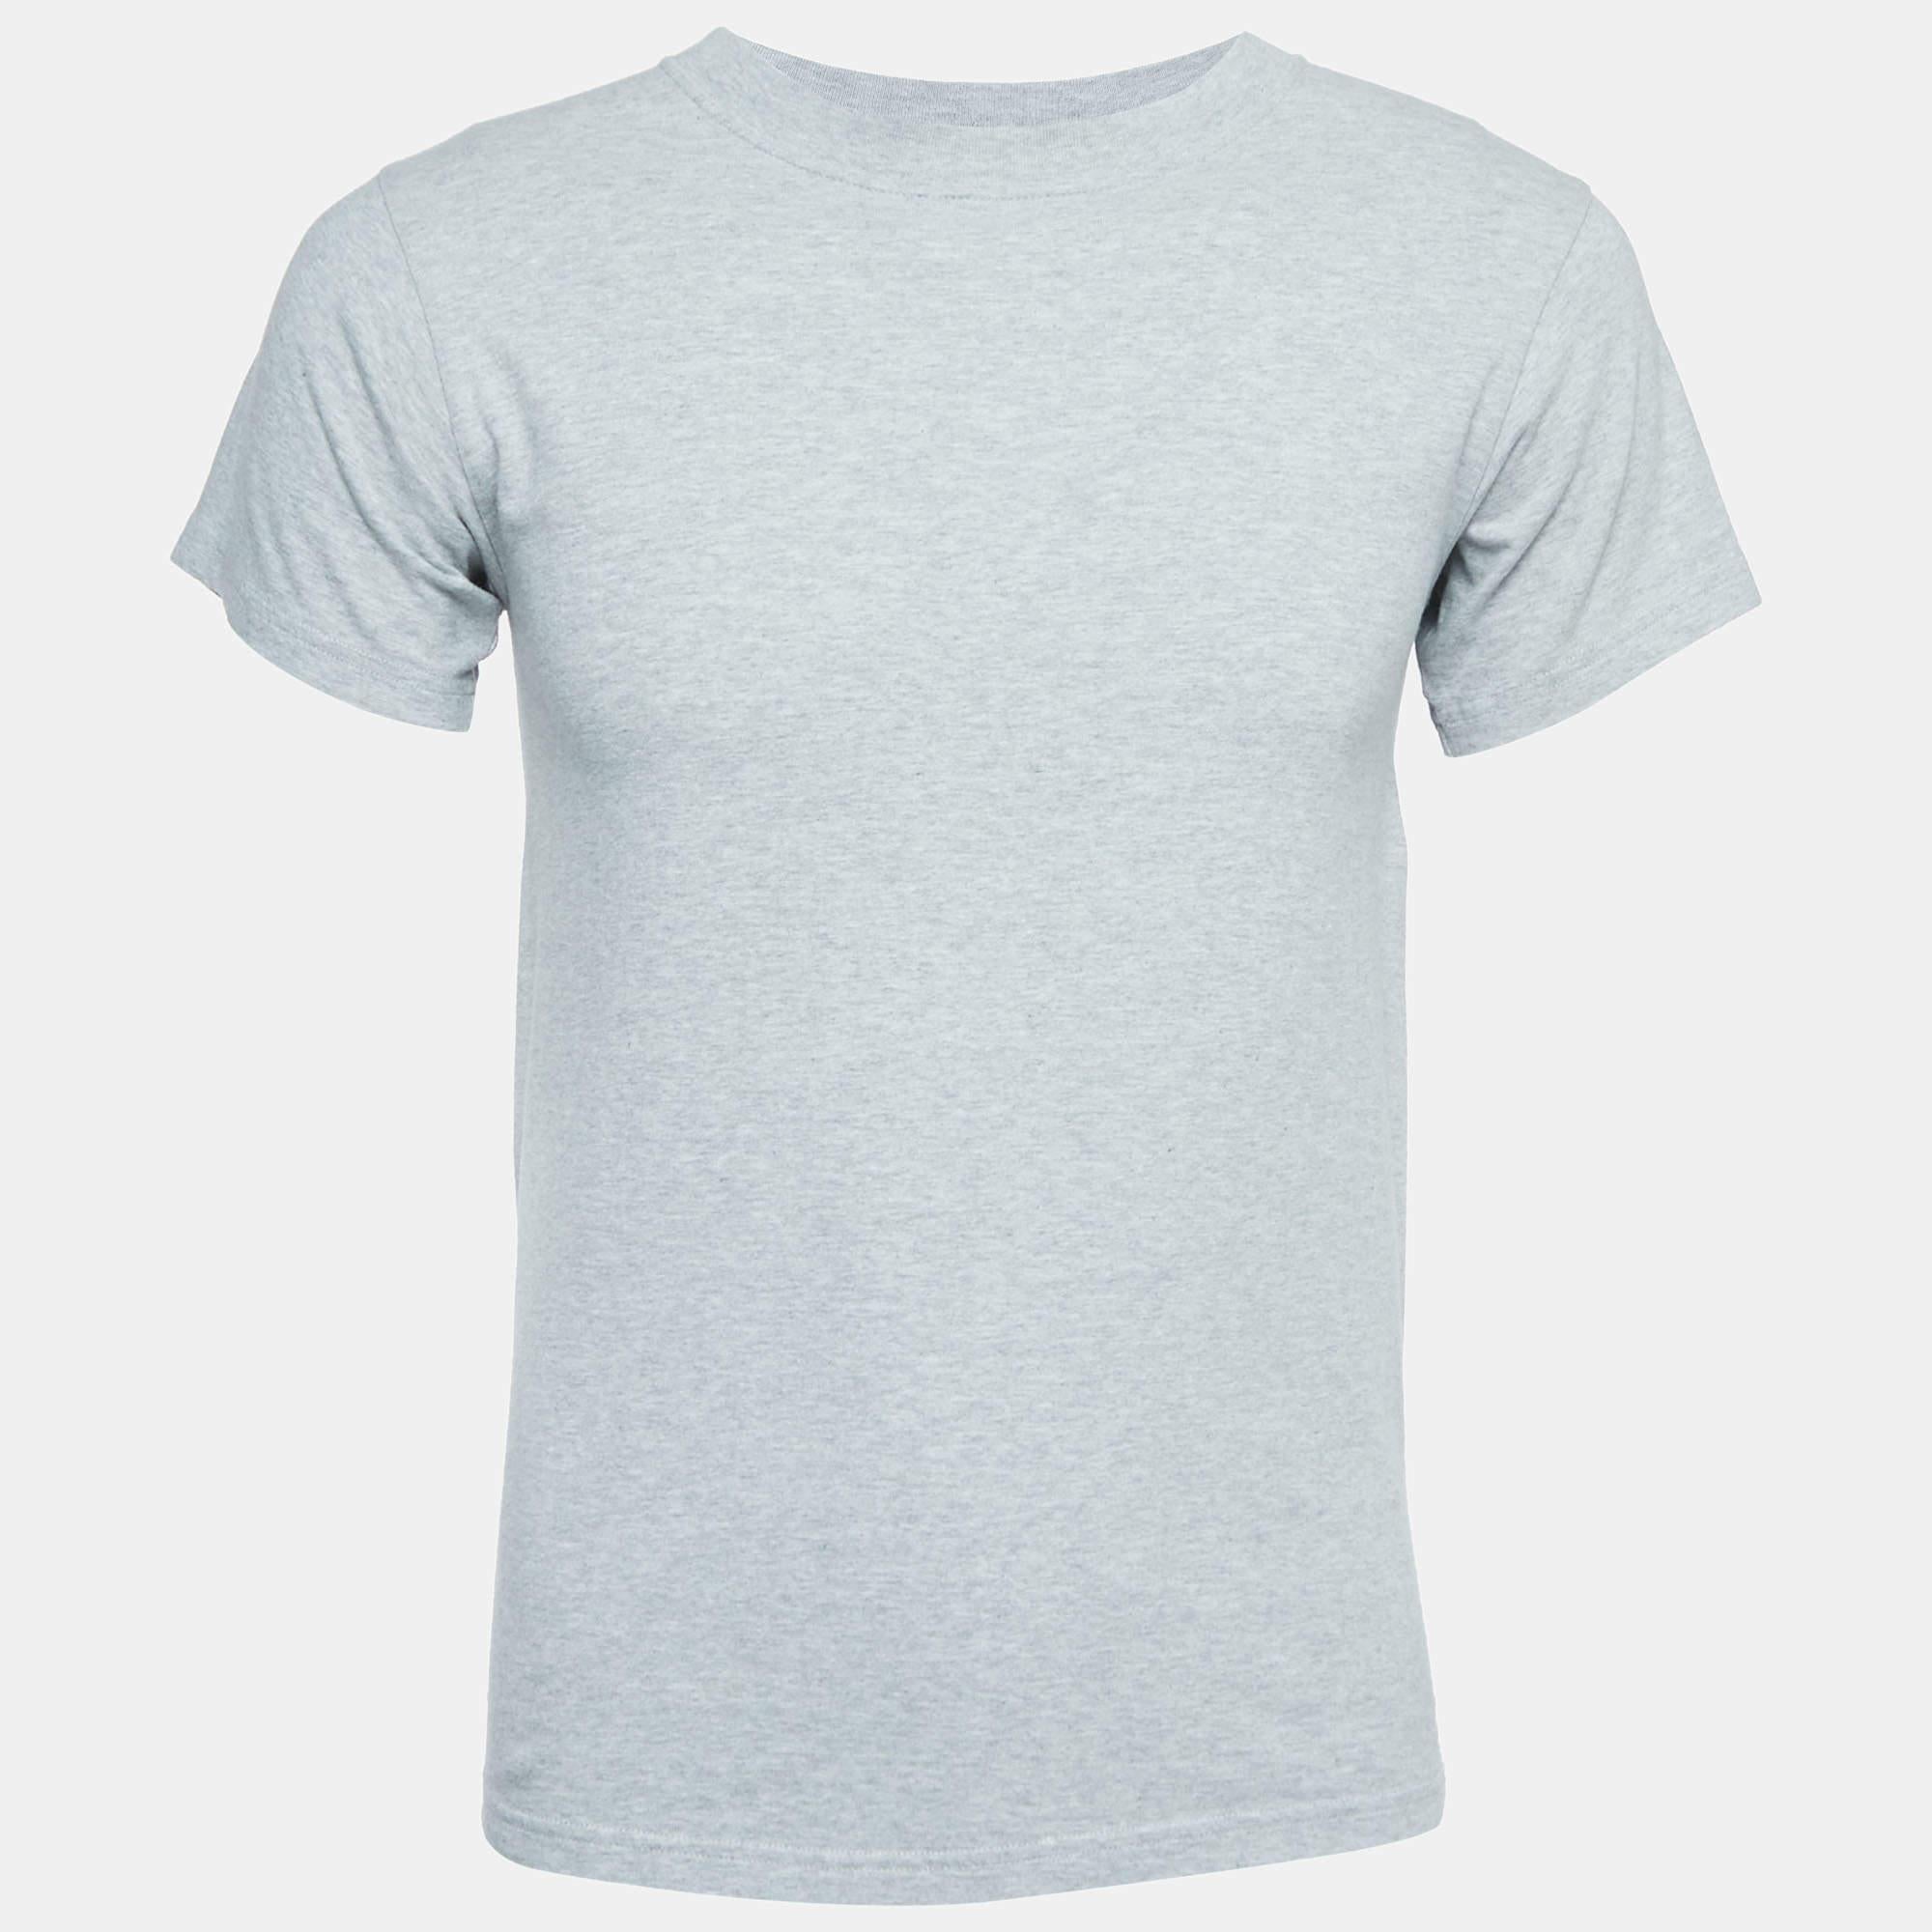 Obtenez le confort et le style décontracté adéquat avec ce T-shirt de créateur. Conçue pour être fiable et durable, cette création présente une encolure simple et des détails signature.

